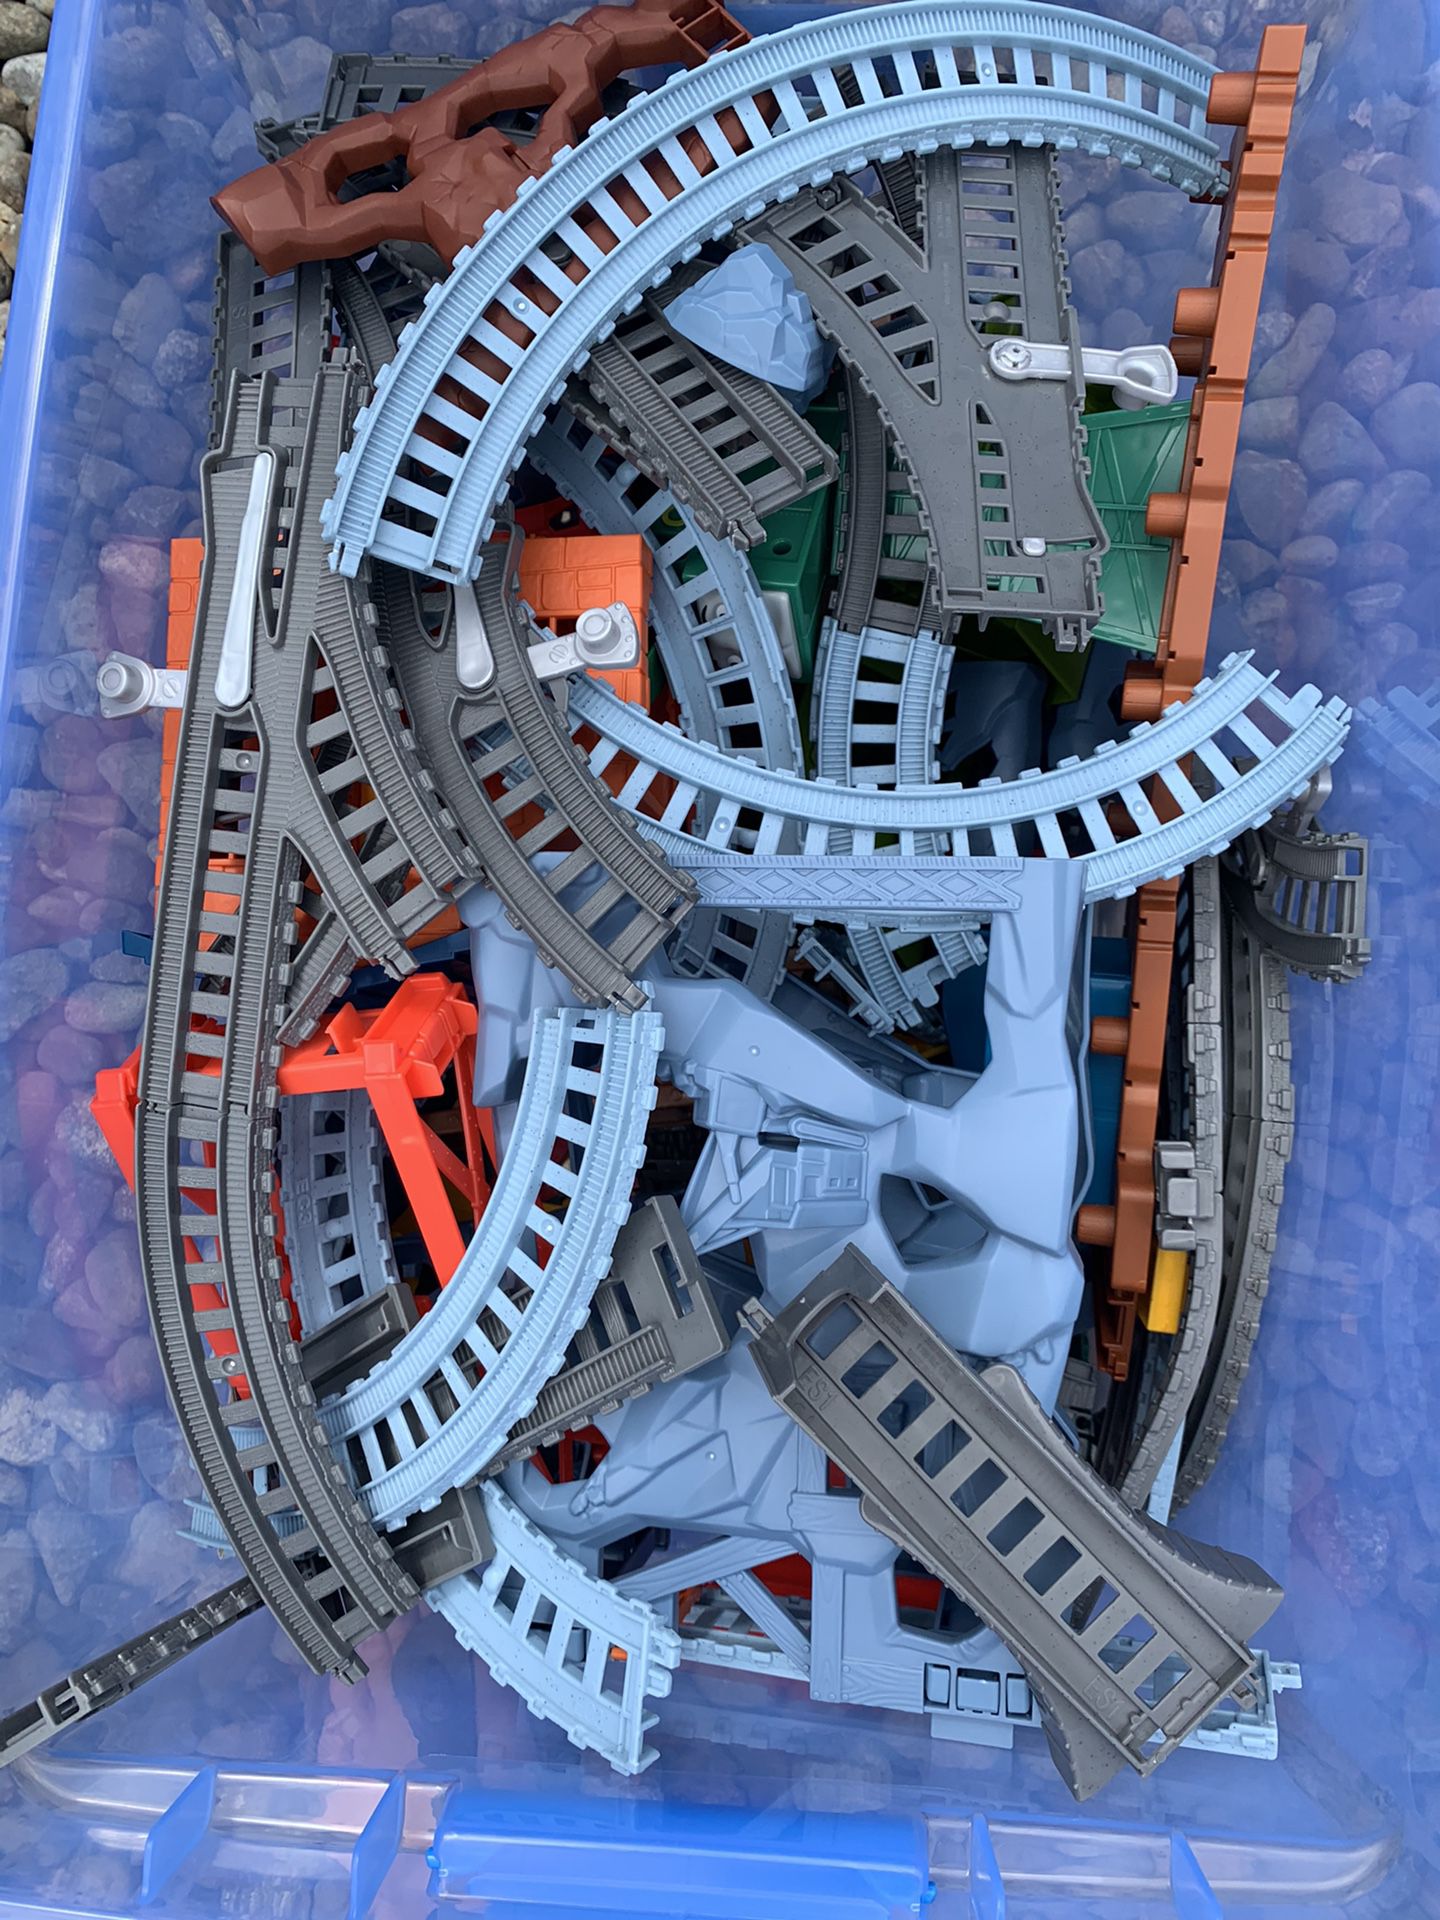 Thomas Trains And Tracks